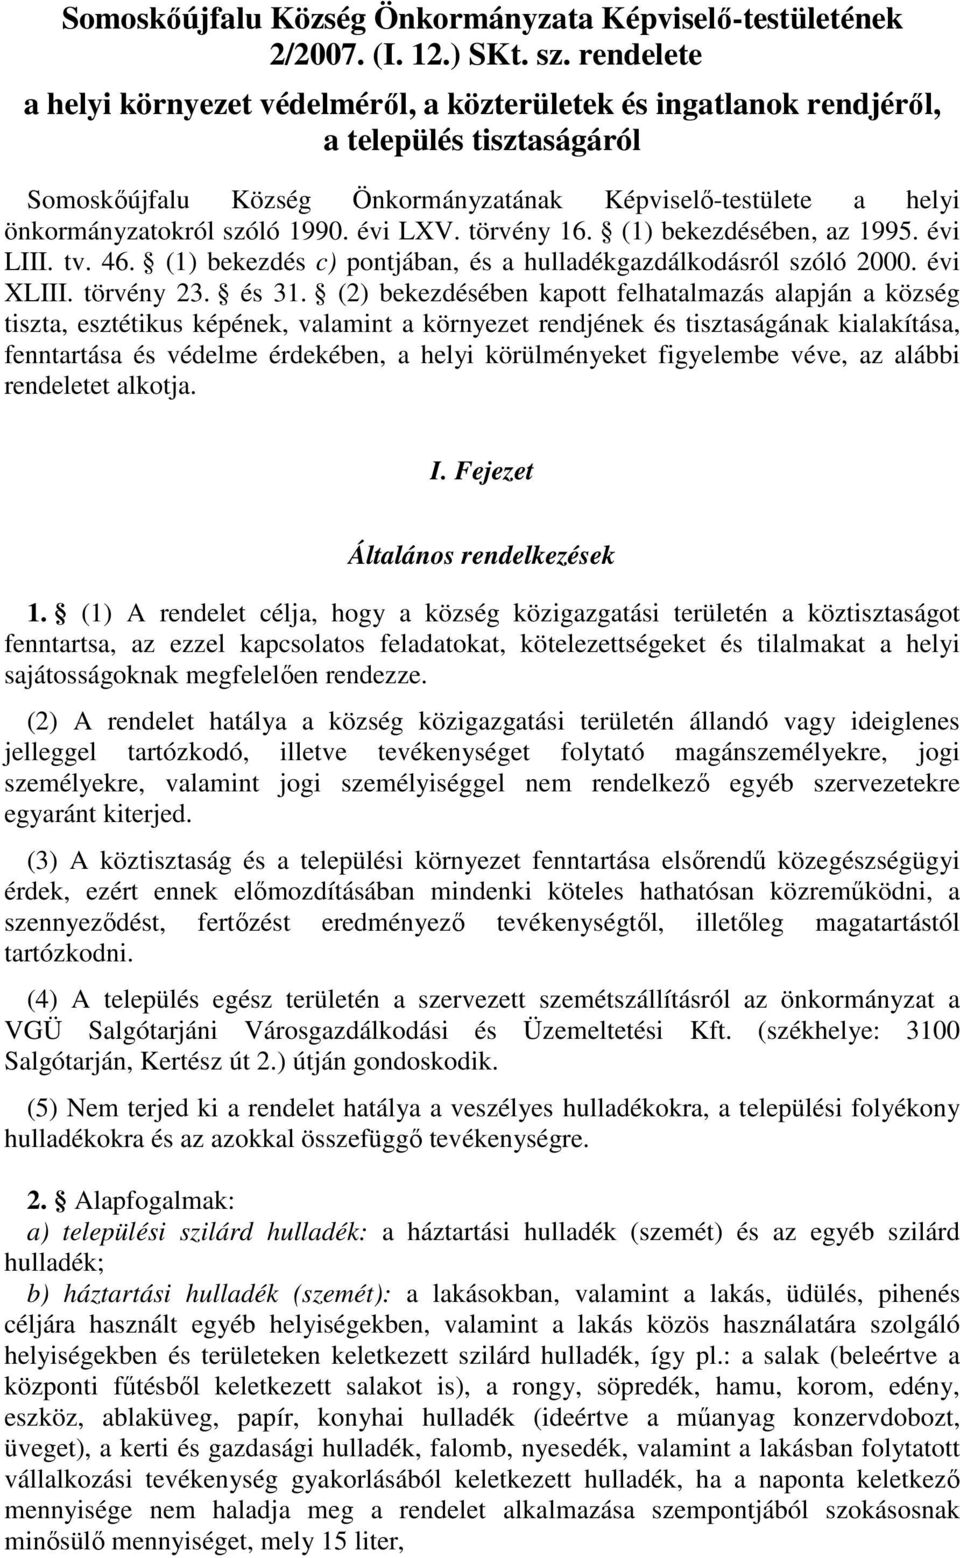 1990. évi LXV. törvény 16. (1) bekezdésében, az 1995. évi LIII. tv. 46. (1) bekezdés c) pontjában, és a hulladékgazdálkodásról szóló 2000. évi XLIII. törvény 23. és 31.